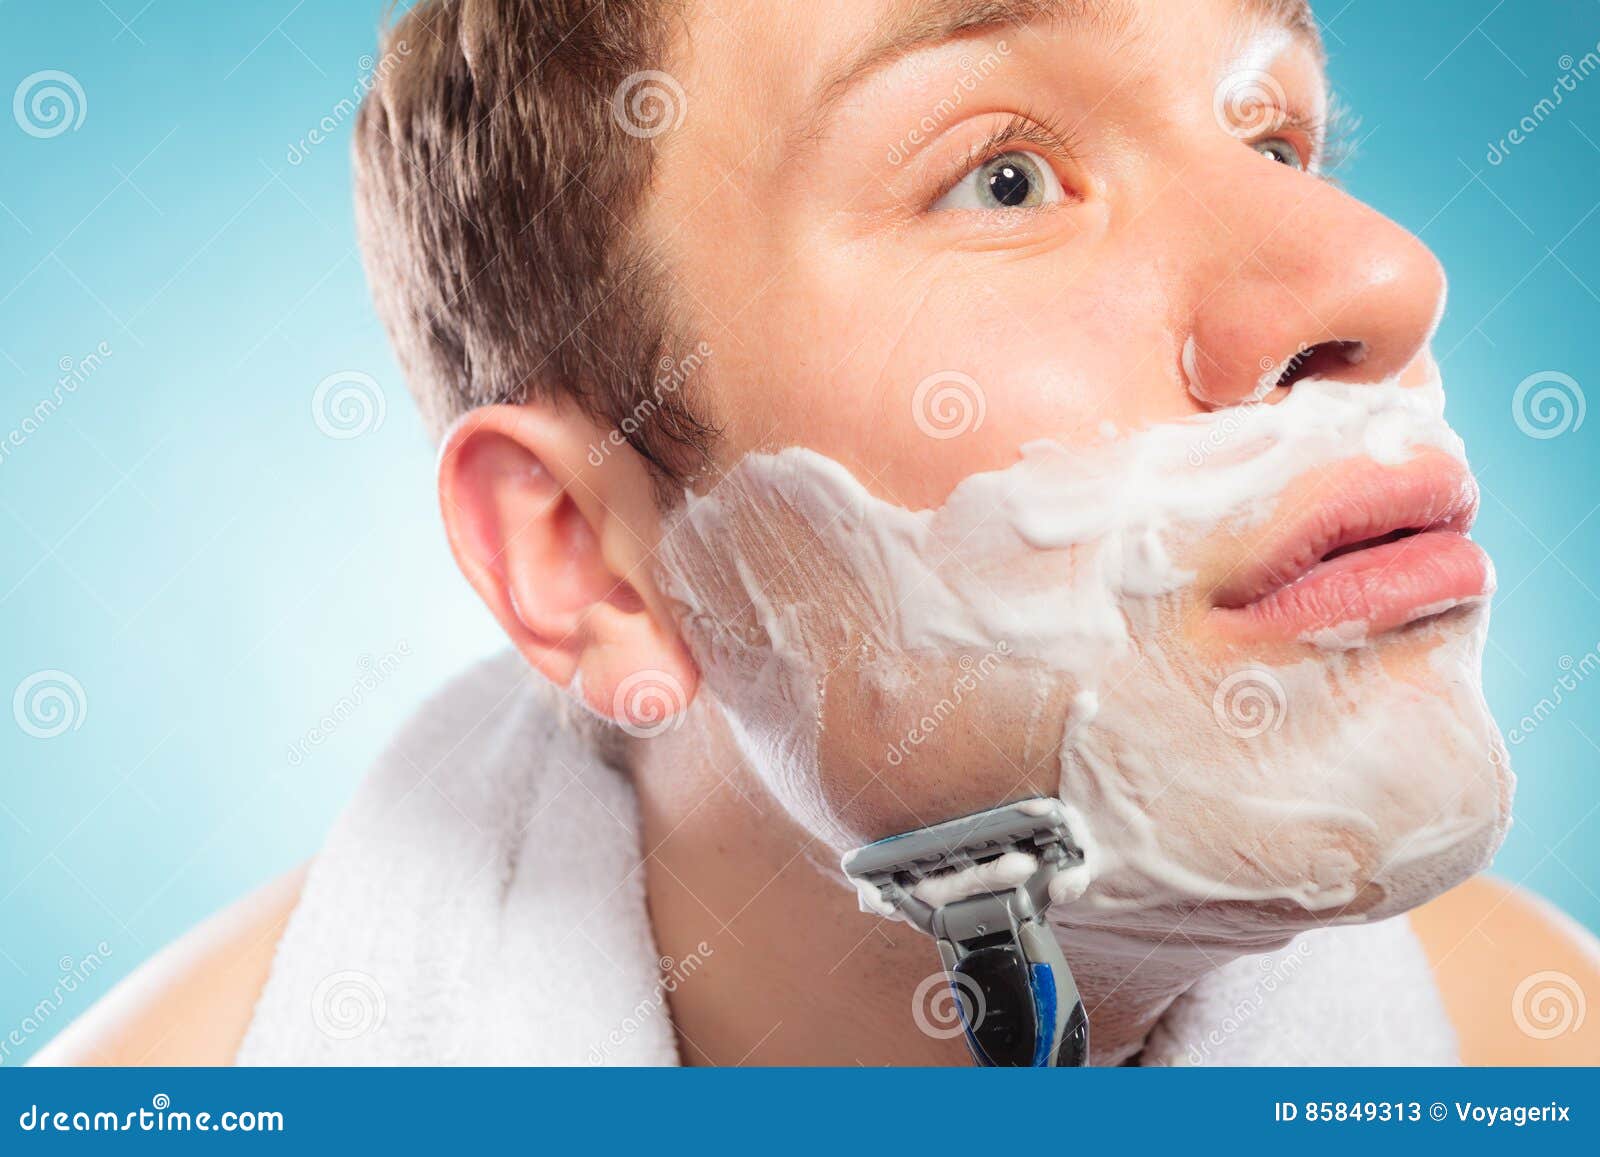 Мужчина бреет видео. С пеной бриться электробритвой. Фото бритва с пеной борода. Как бриться с пеной. Удаляем молодой человек.